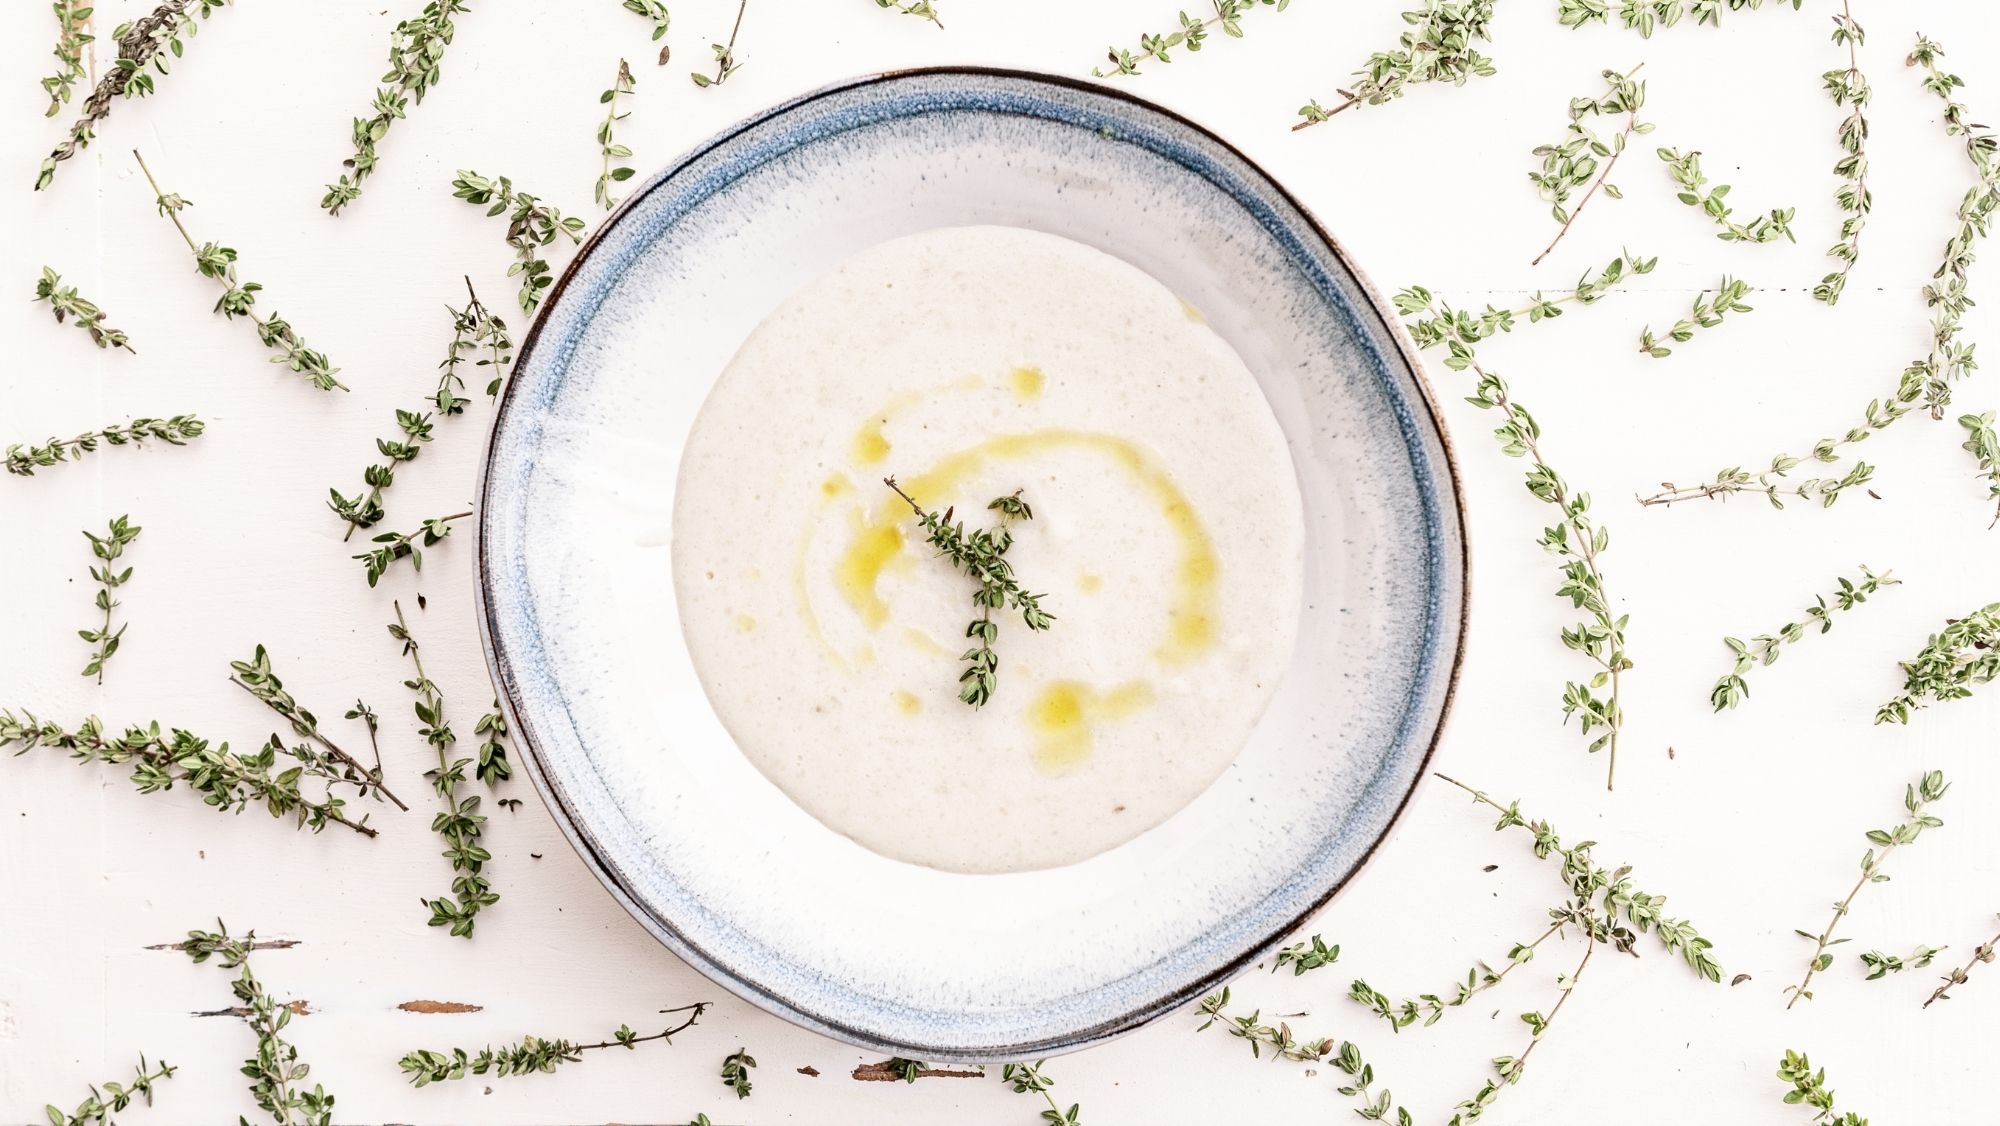 Sopa de tomillo, una receta antigua, deliciosa y curativa